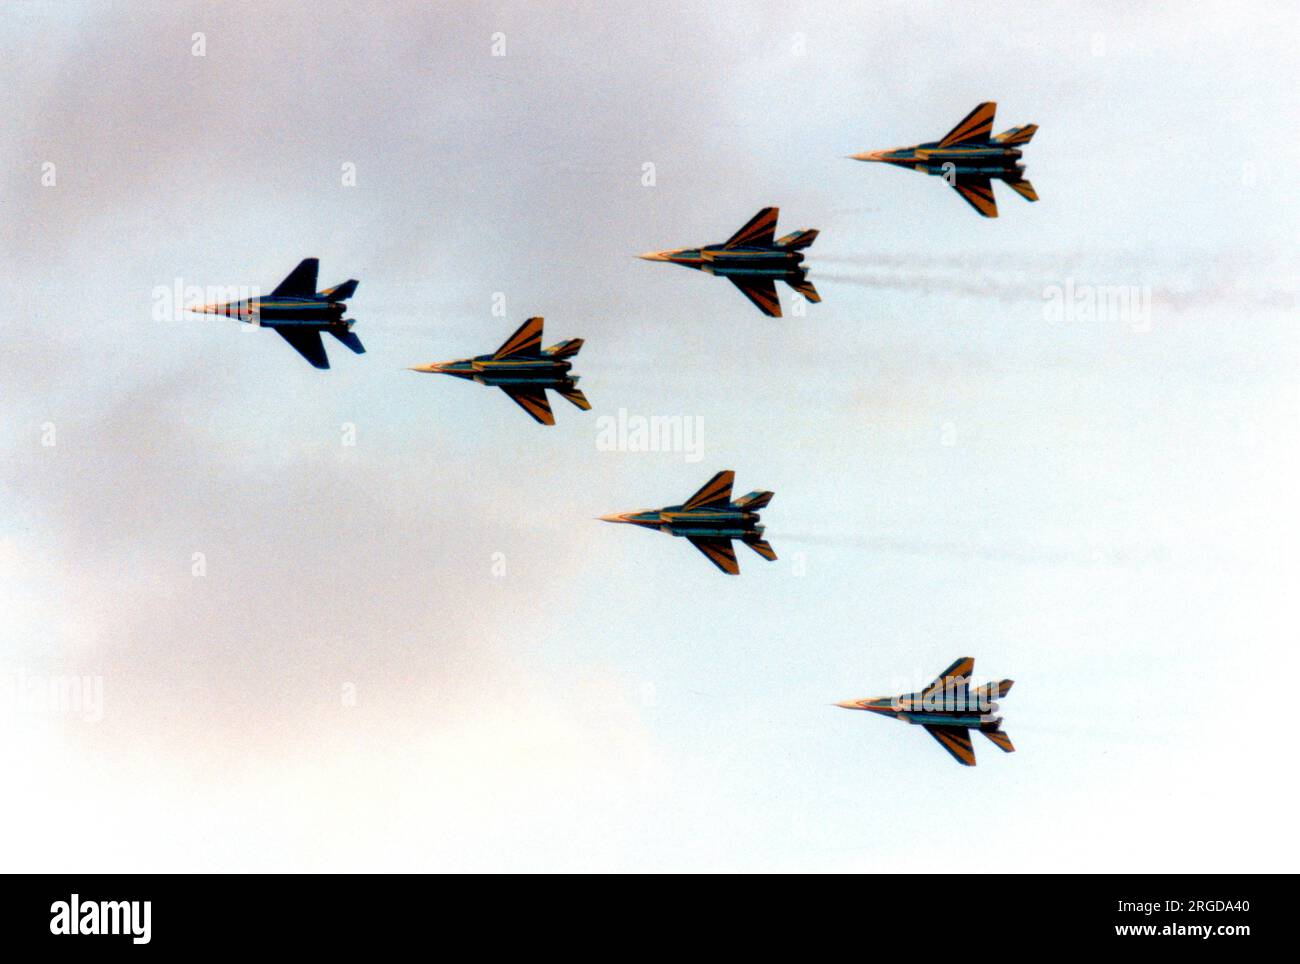 Armée de l'air ukrainienne - Mikoyan-Gurevich MIG-29a de l'équipe ukrainienne Falcons, à la RAF Fairford pour le Royal International Air Tattoo le 19 juillet 1997 Banque D'Images